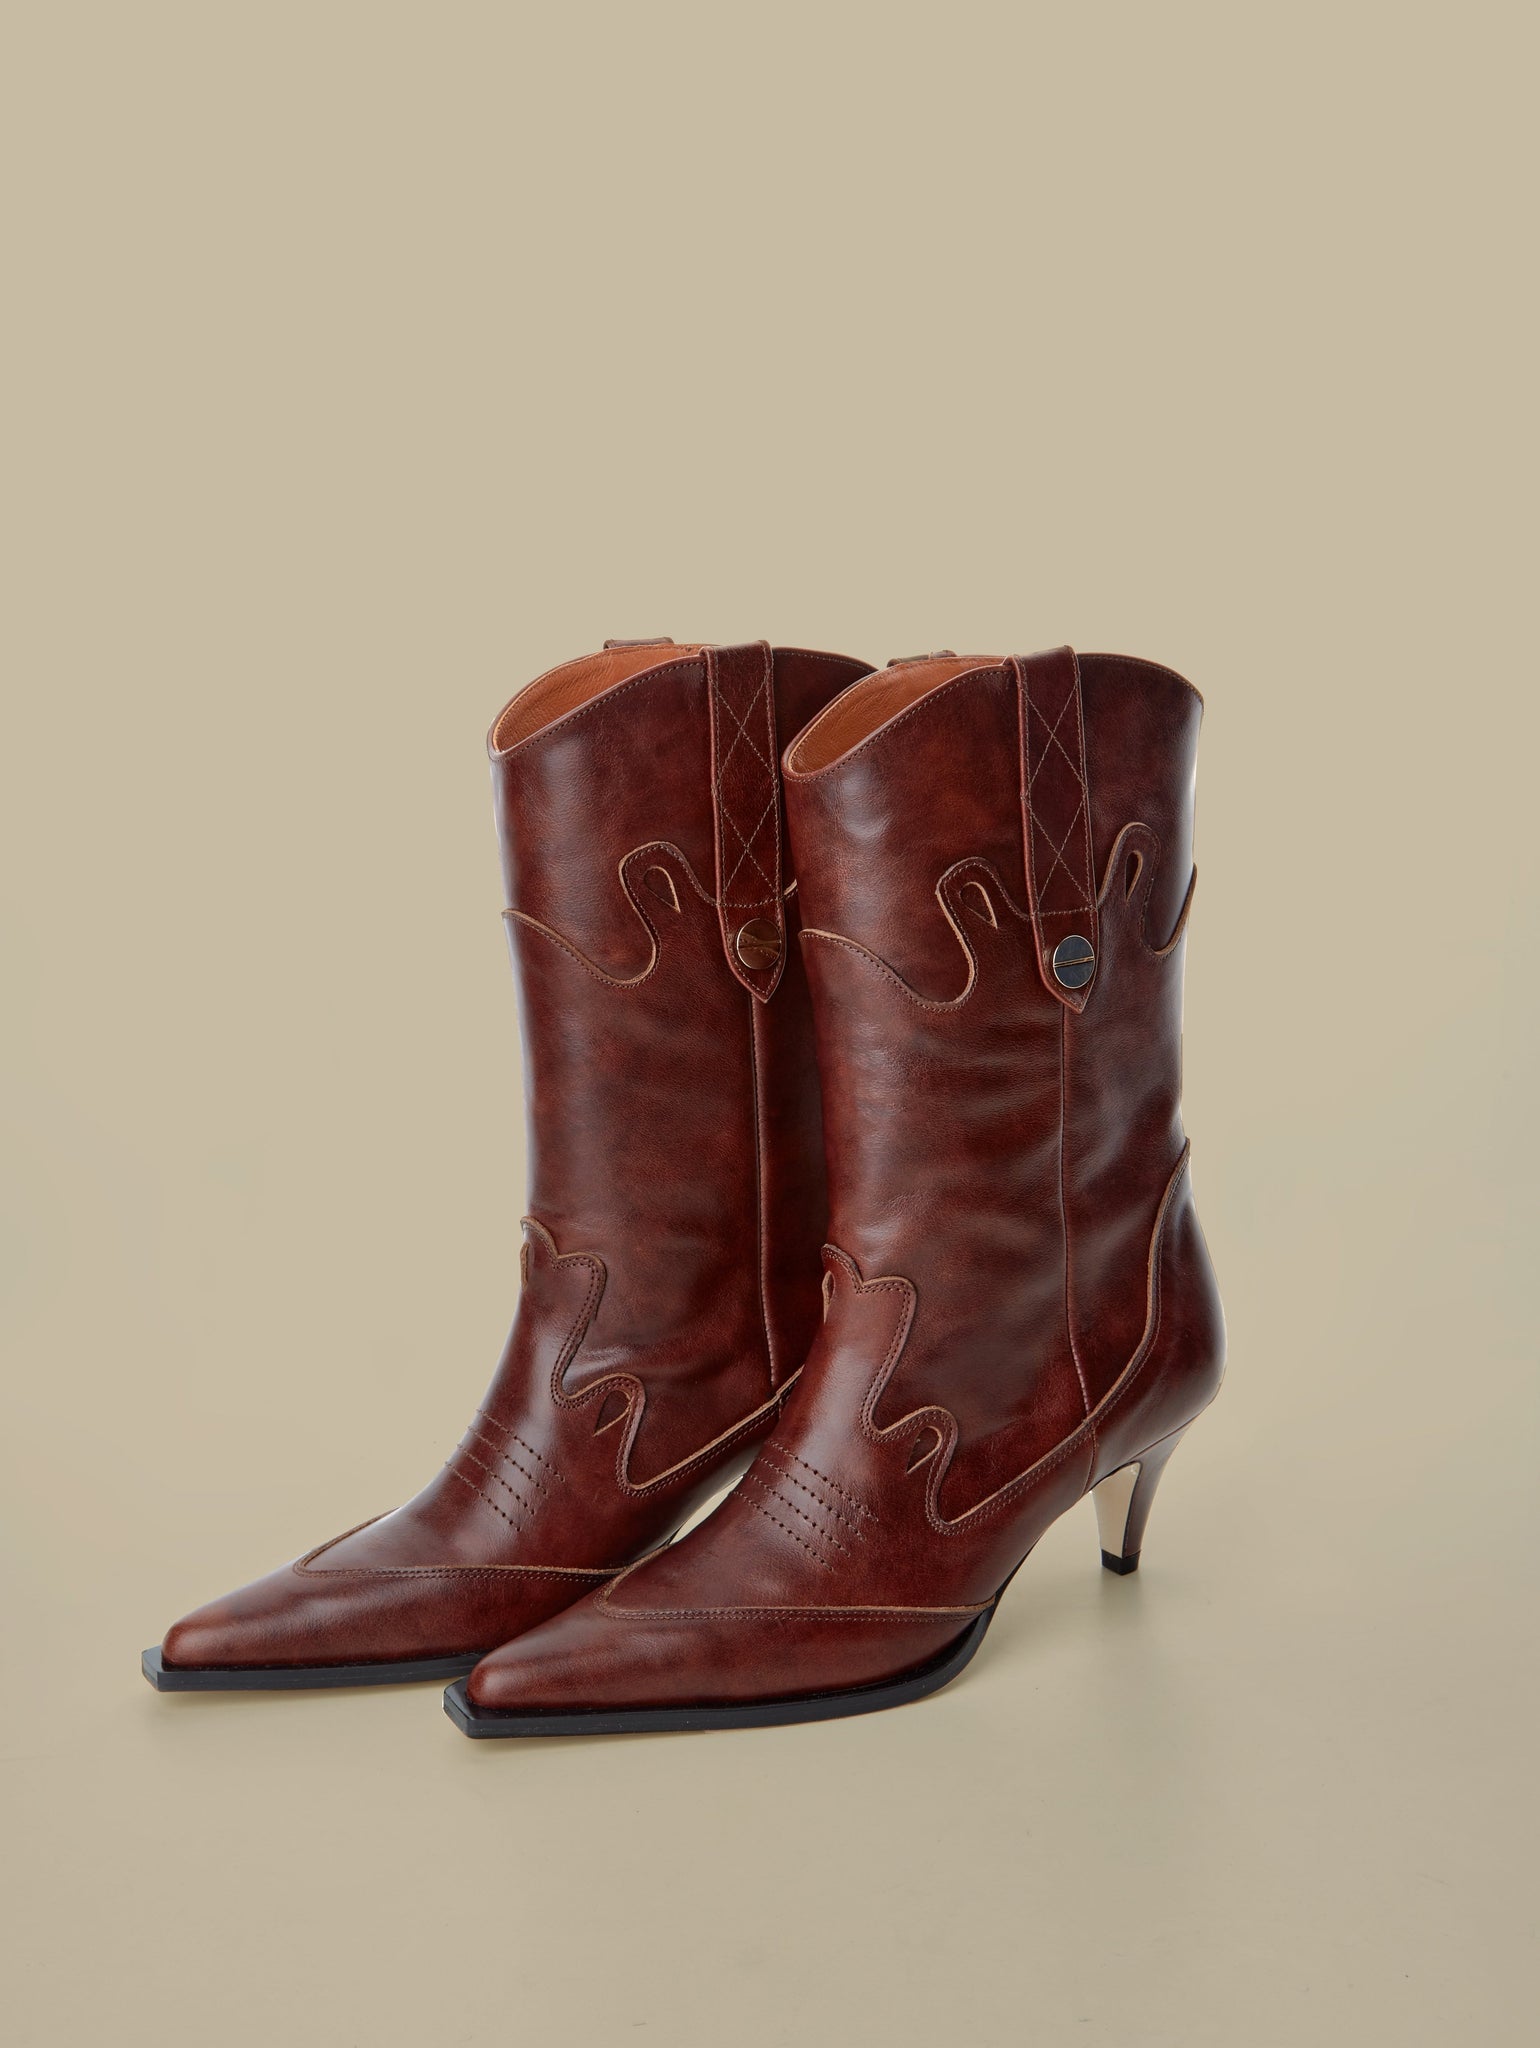 Rennes Cowboy Boots-Brown - Je la connais